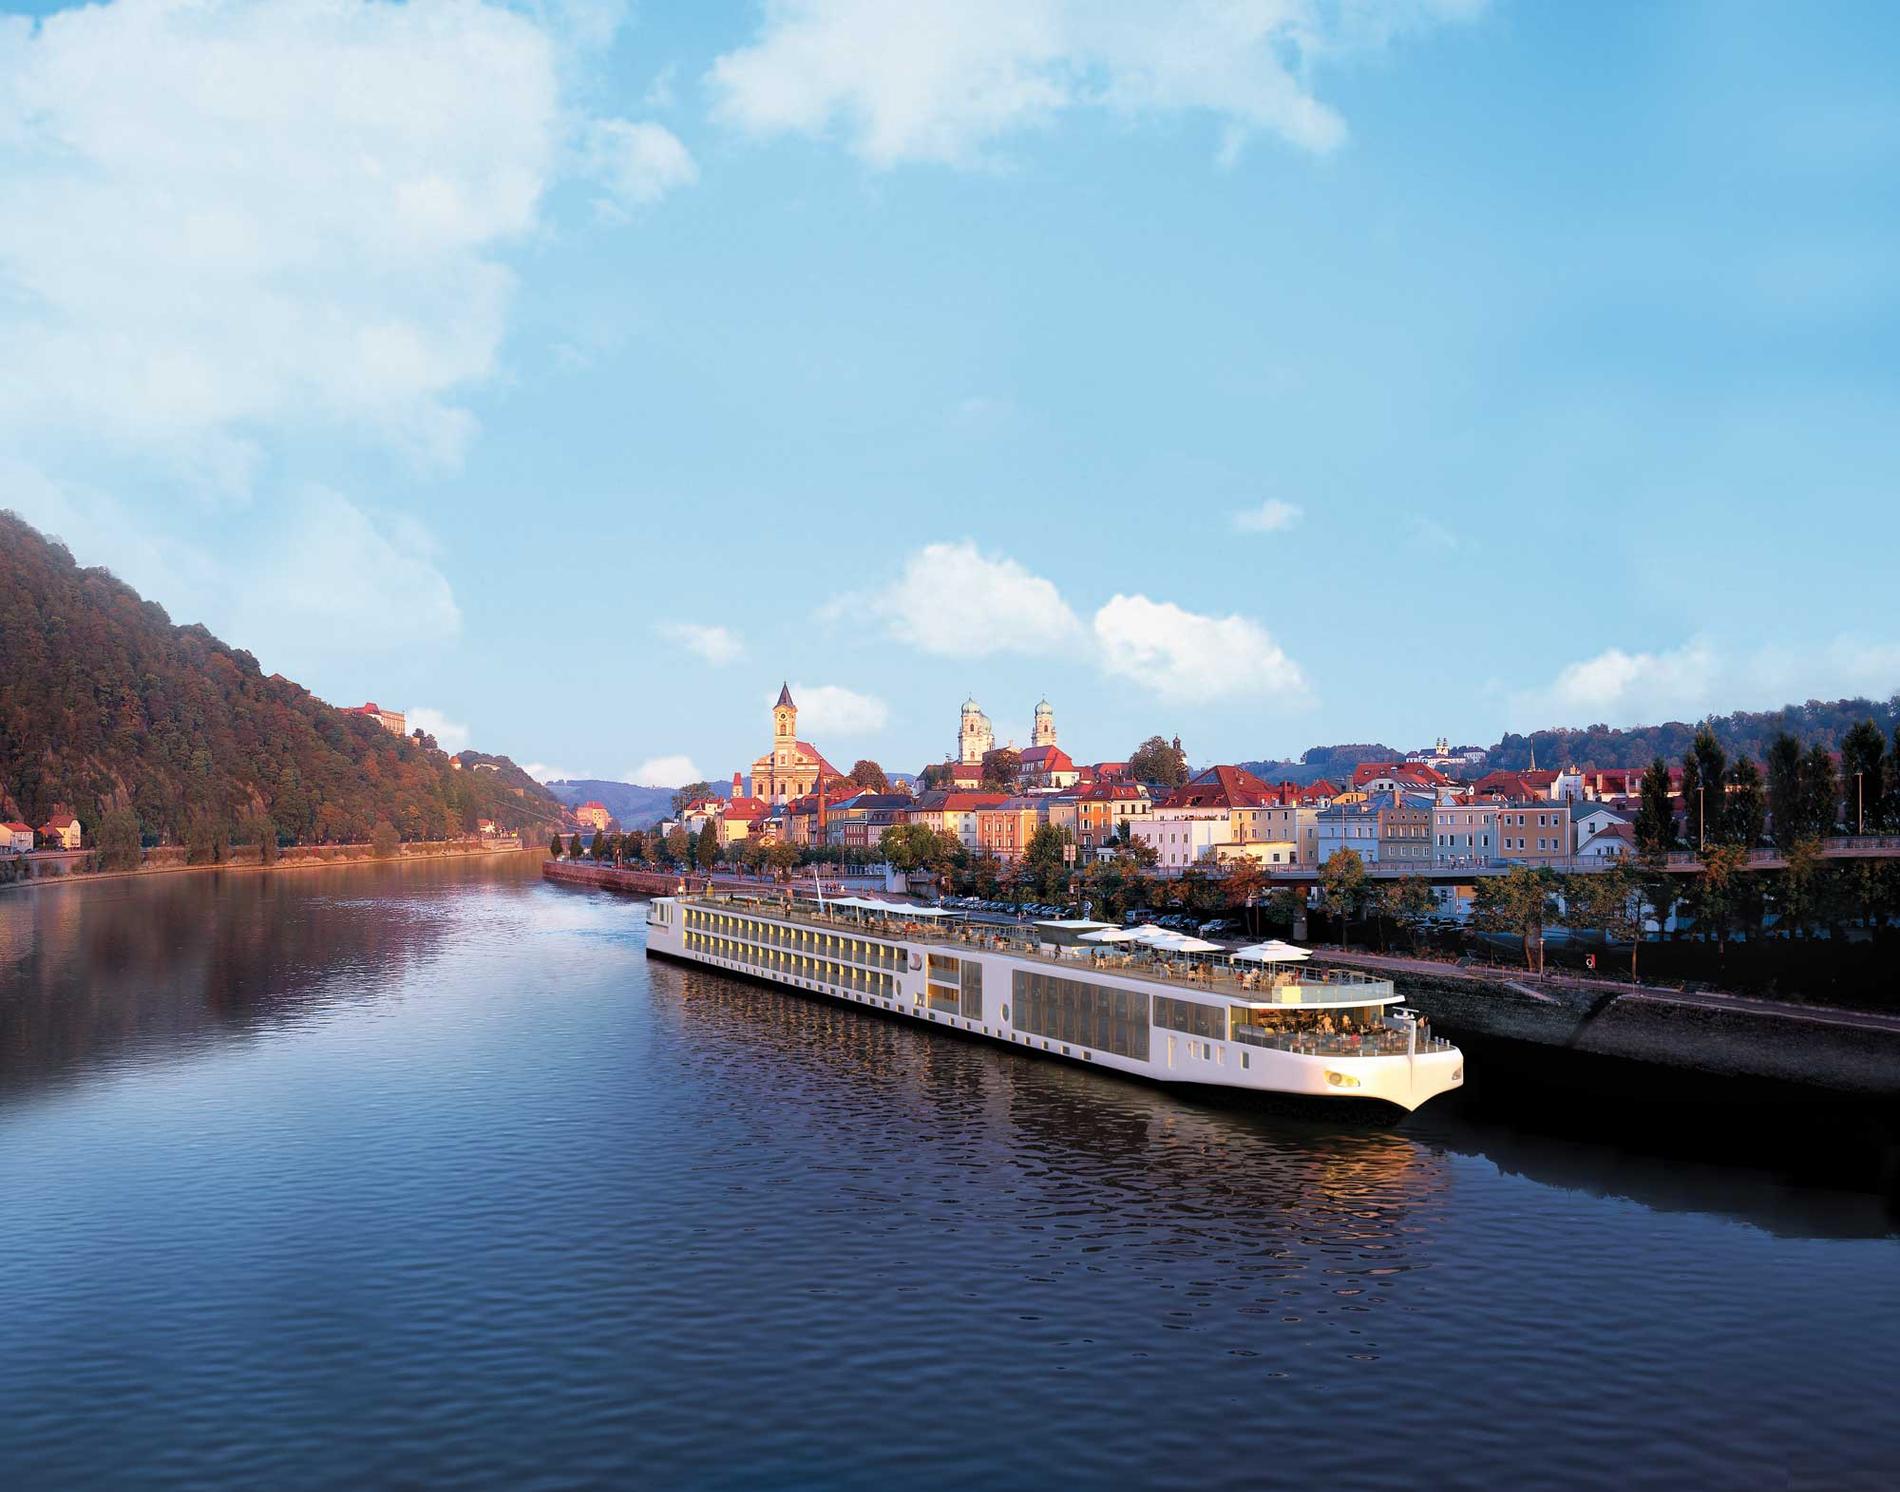 Viking River Cruises är ett amerikanskt rederi som storsatsar på nya flodkryssare – hela 13 nybyggda fartyg sjösätts 2012-13.